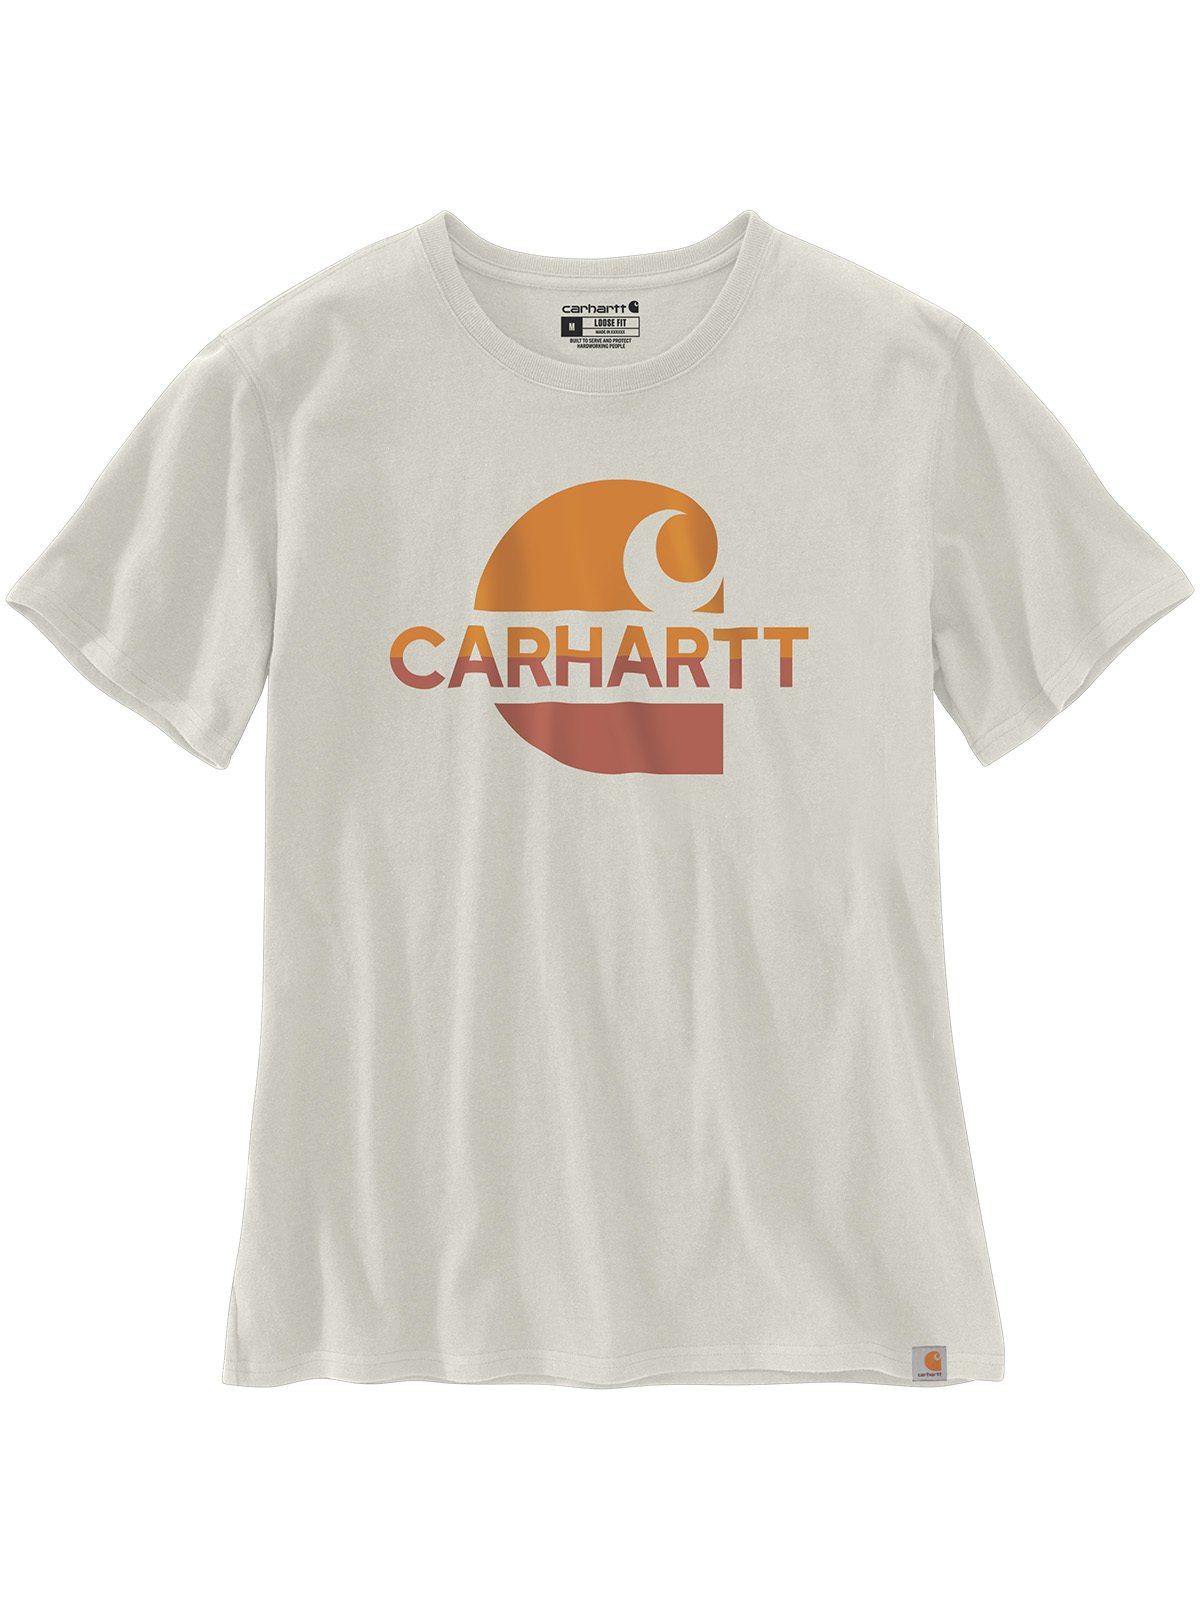 Carhartt T-Shirt Carhartt Graphic T-Shirt malt weiß